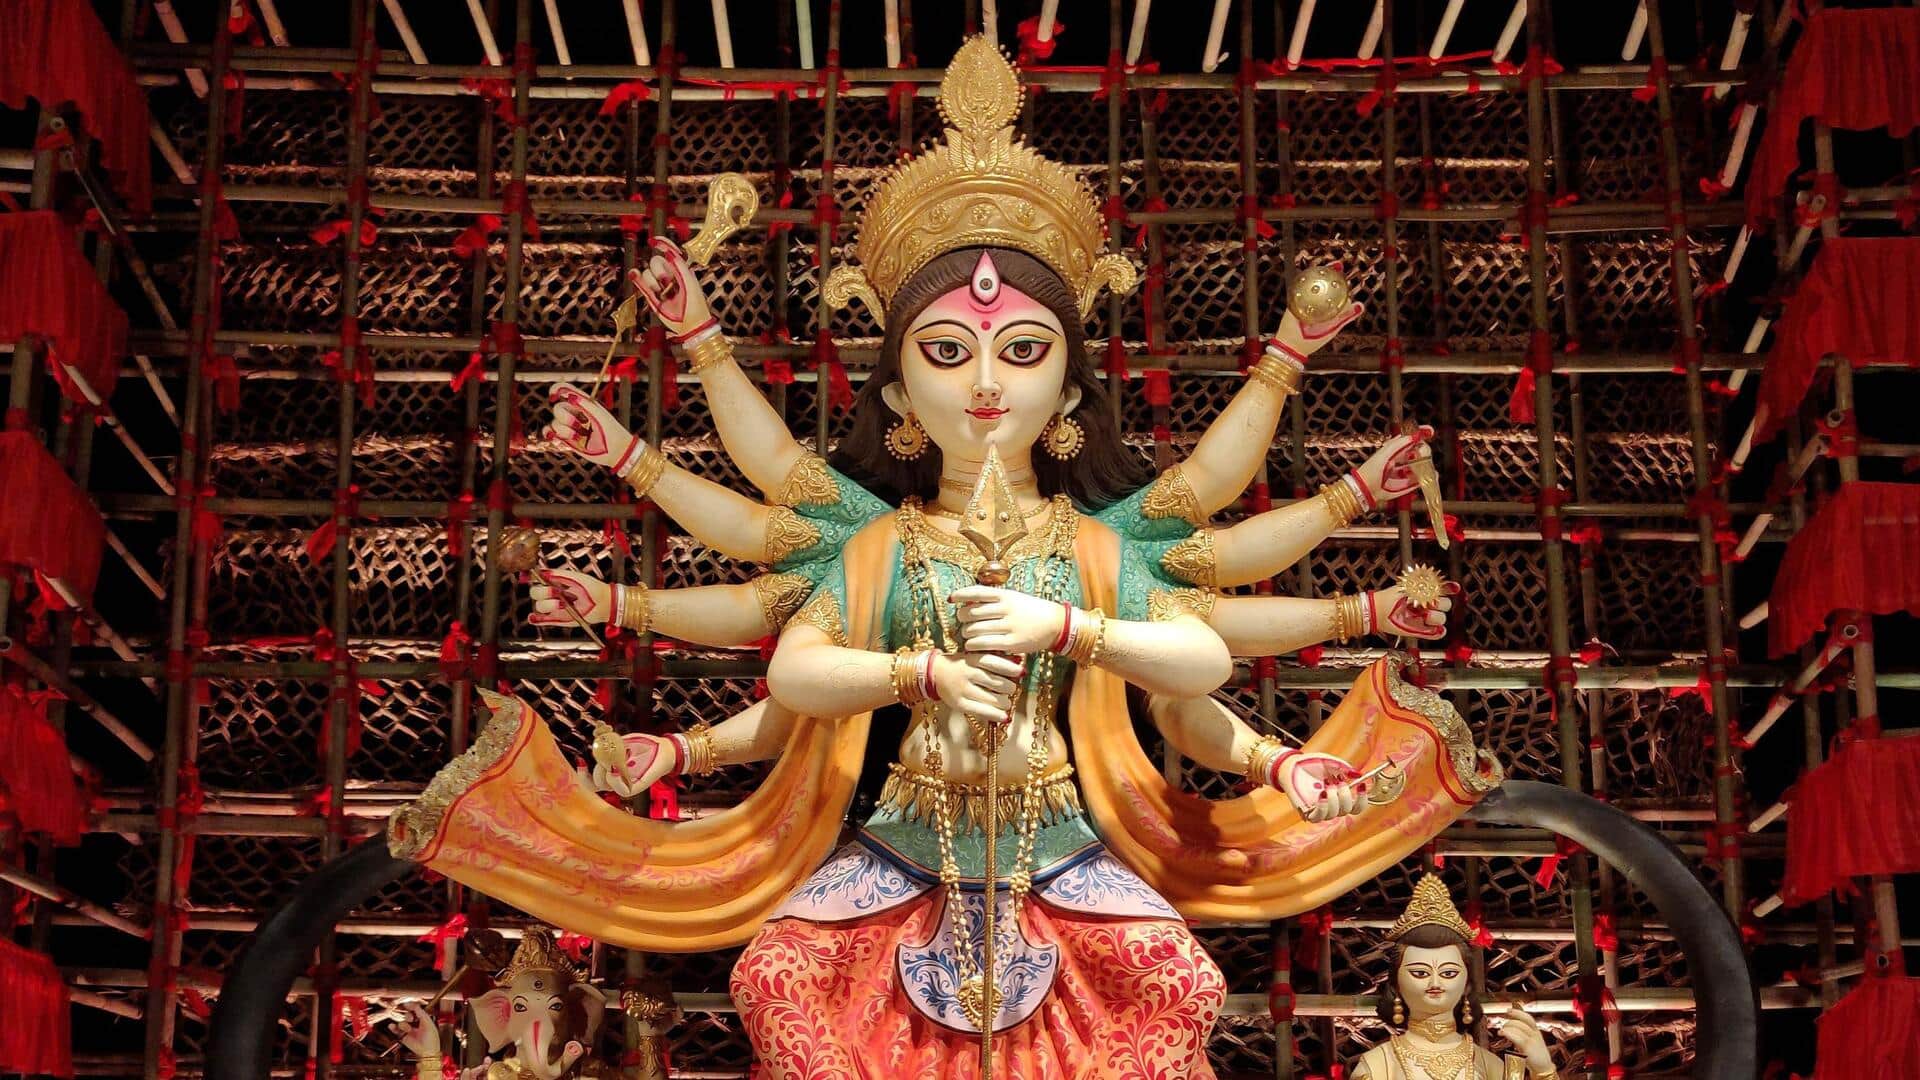 दुर्गा पूजा की धूम देखने के लिए इन 5 जगहों का करें रुख